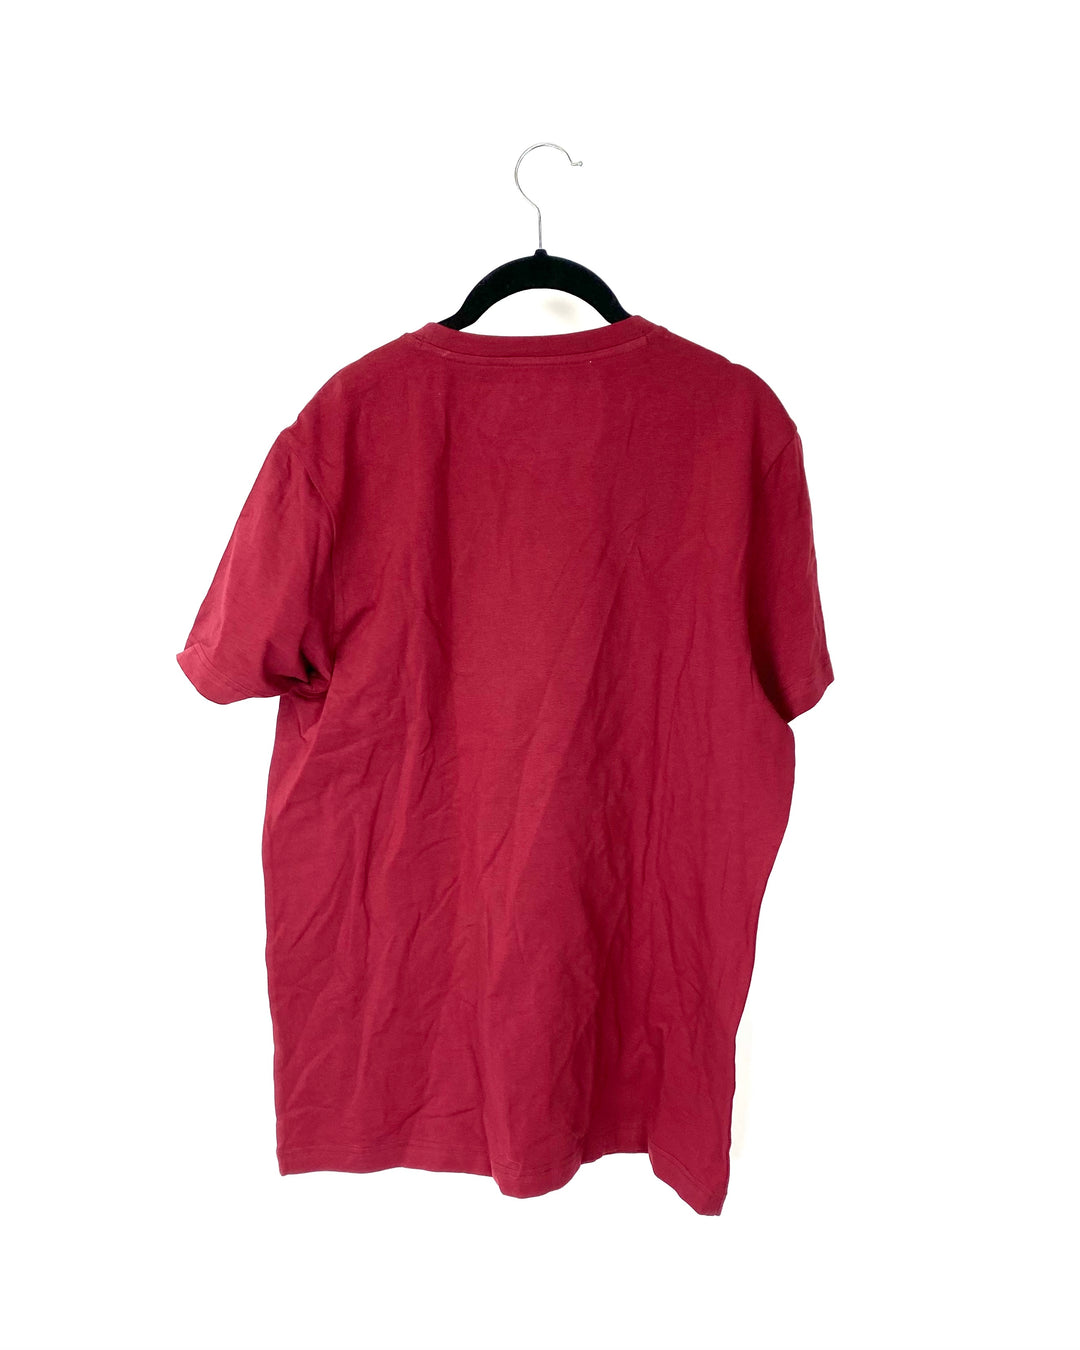 MENS Red Shirt - Medium